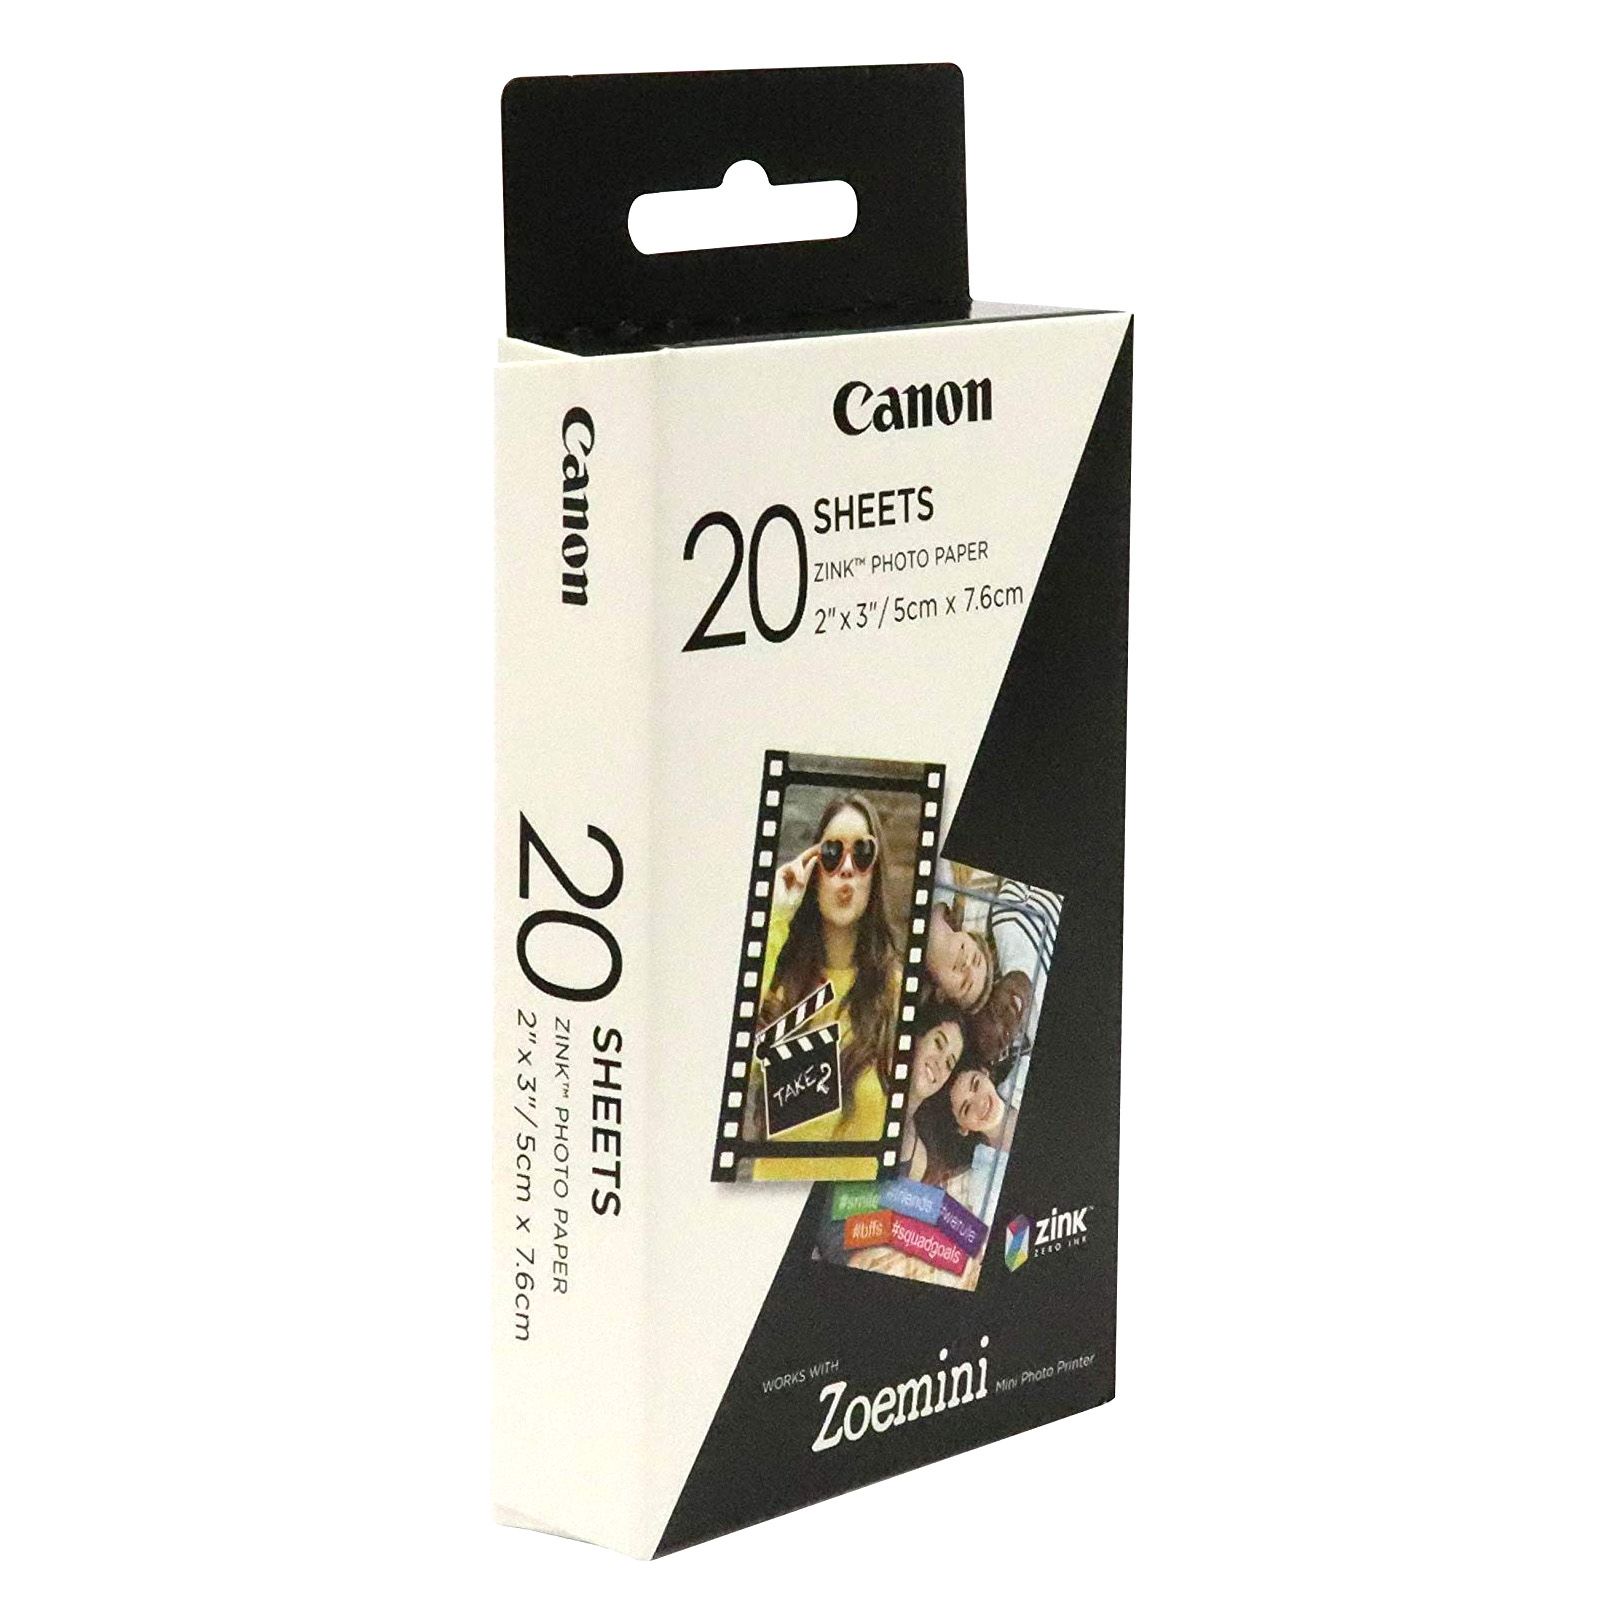 Canon IVY Mobile - Mini impresora fotográfica portátil, color oro rosa con  papel fotográfico Zink, 20 hojas